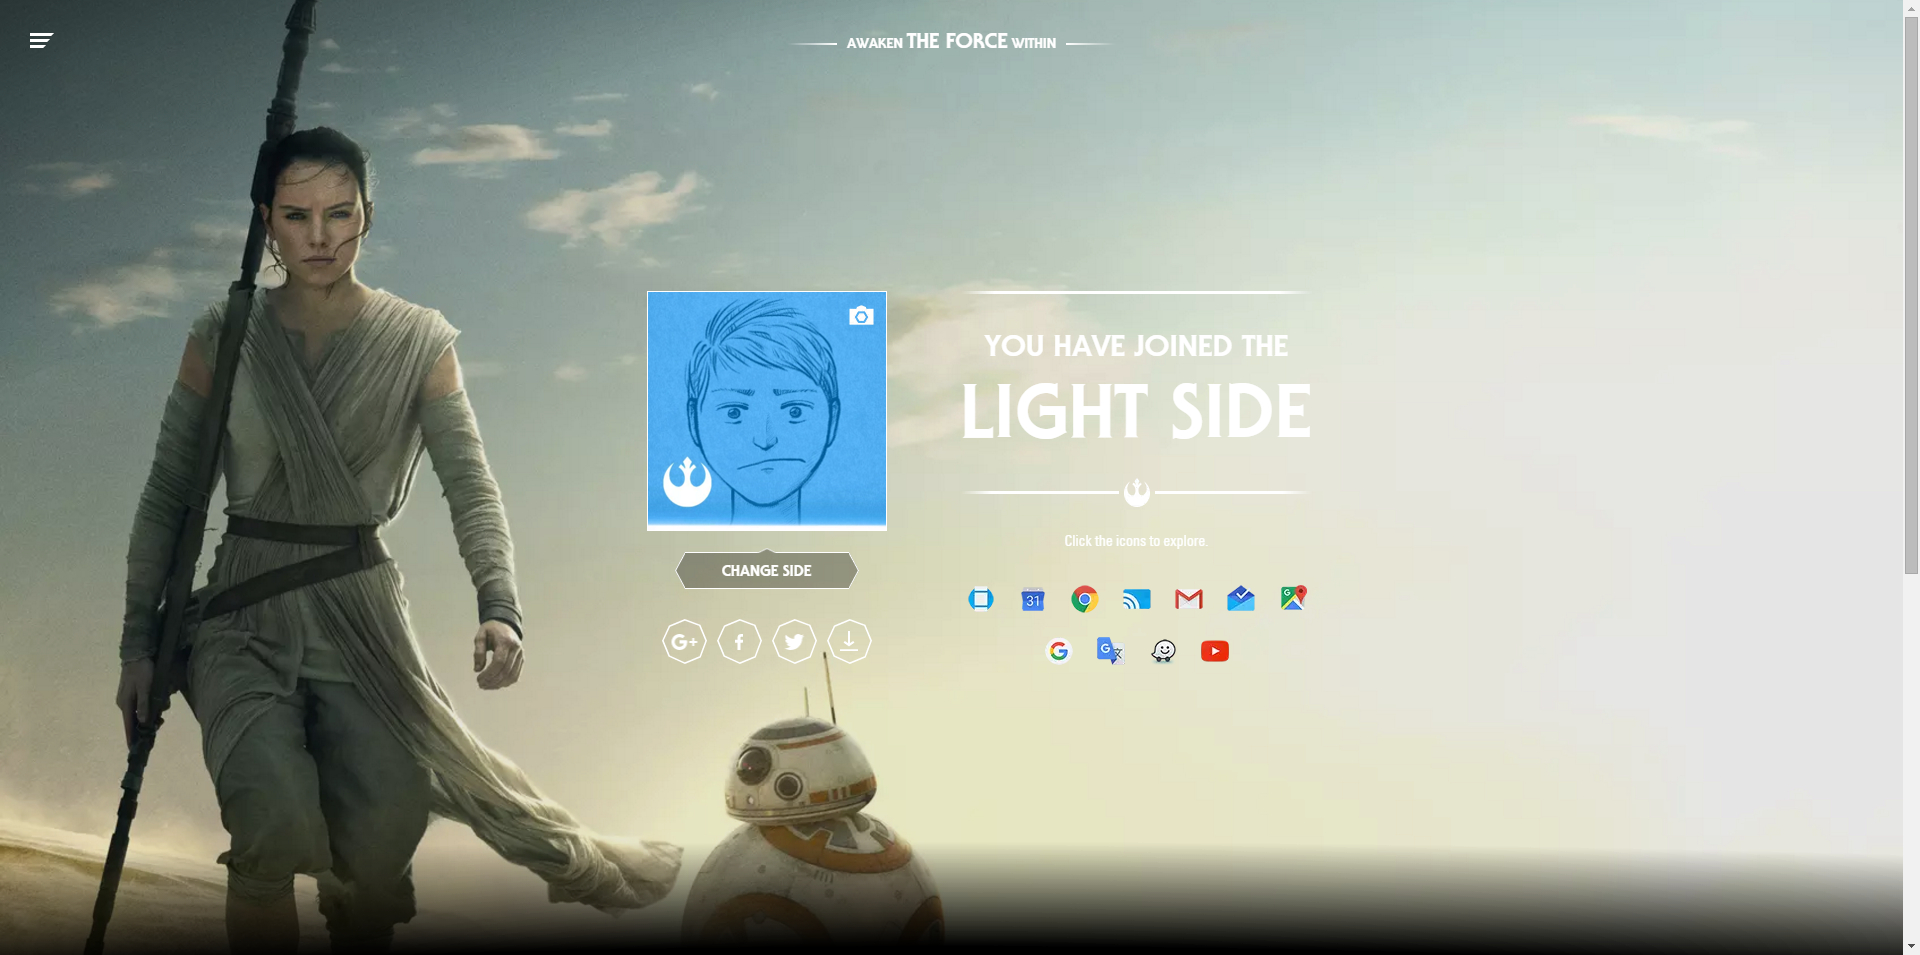 Chọn Chính - Tà trong Star Wars, nhận bất ngờ từ Google